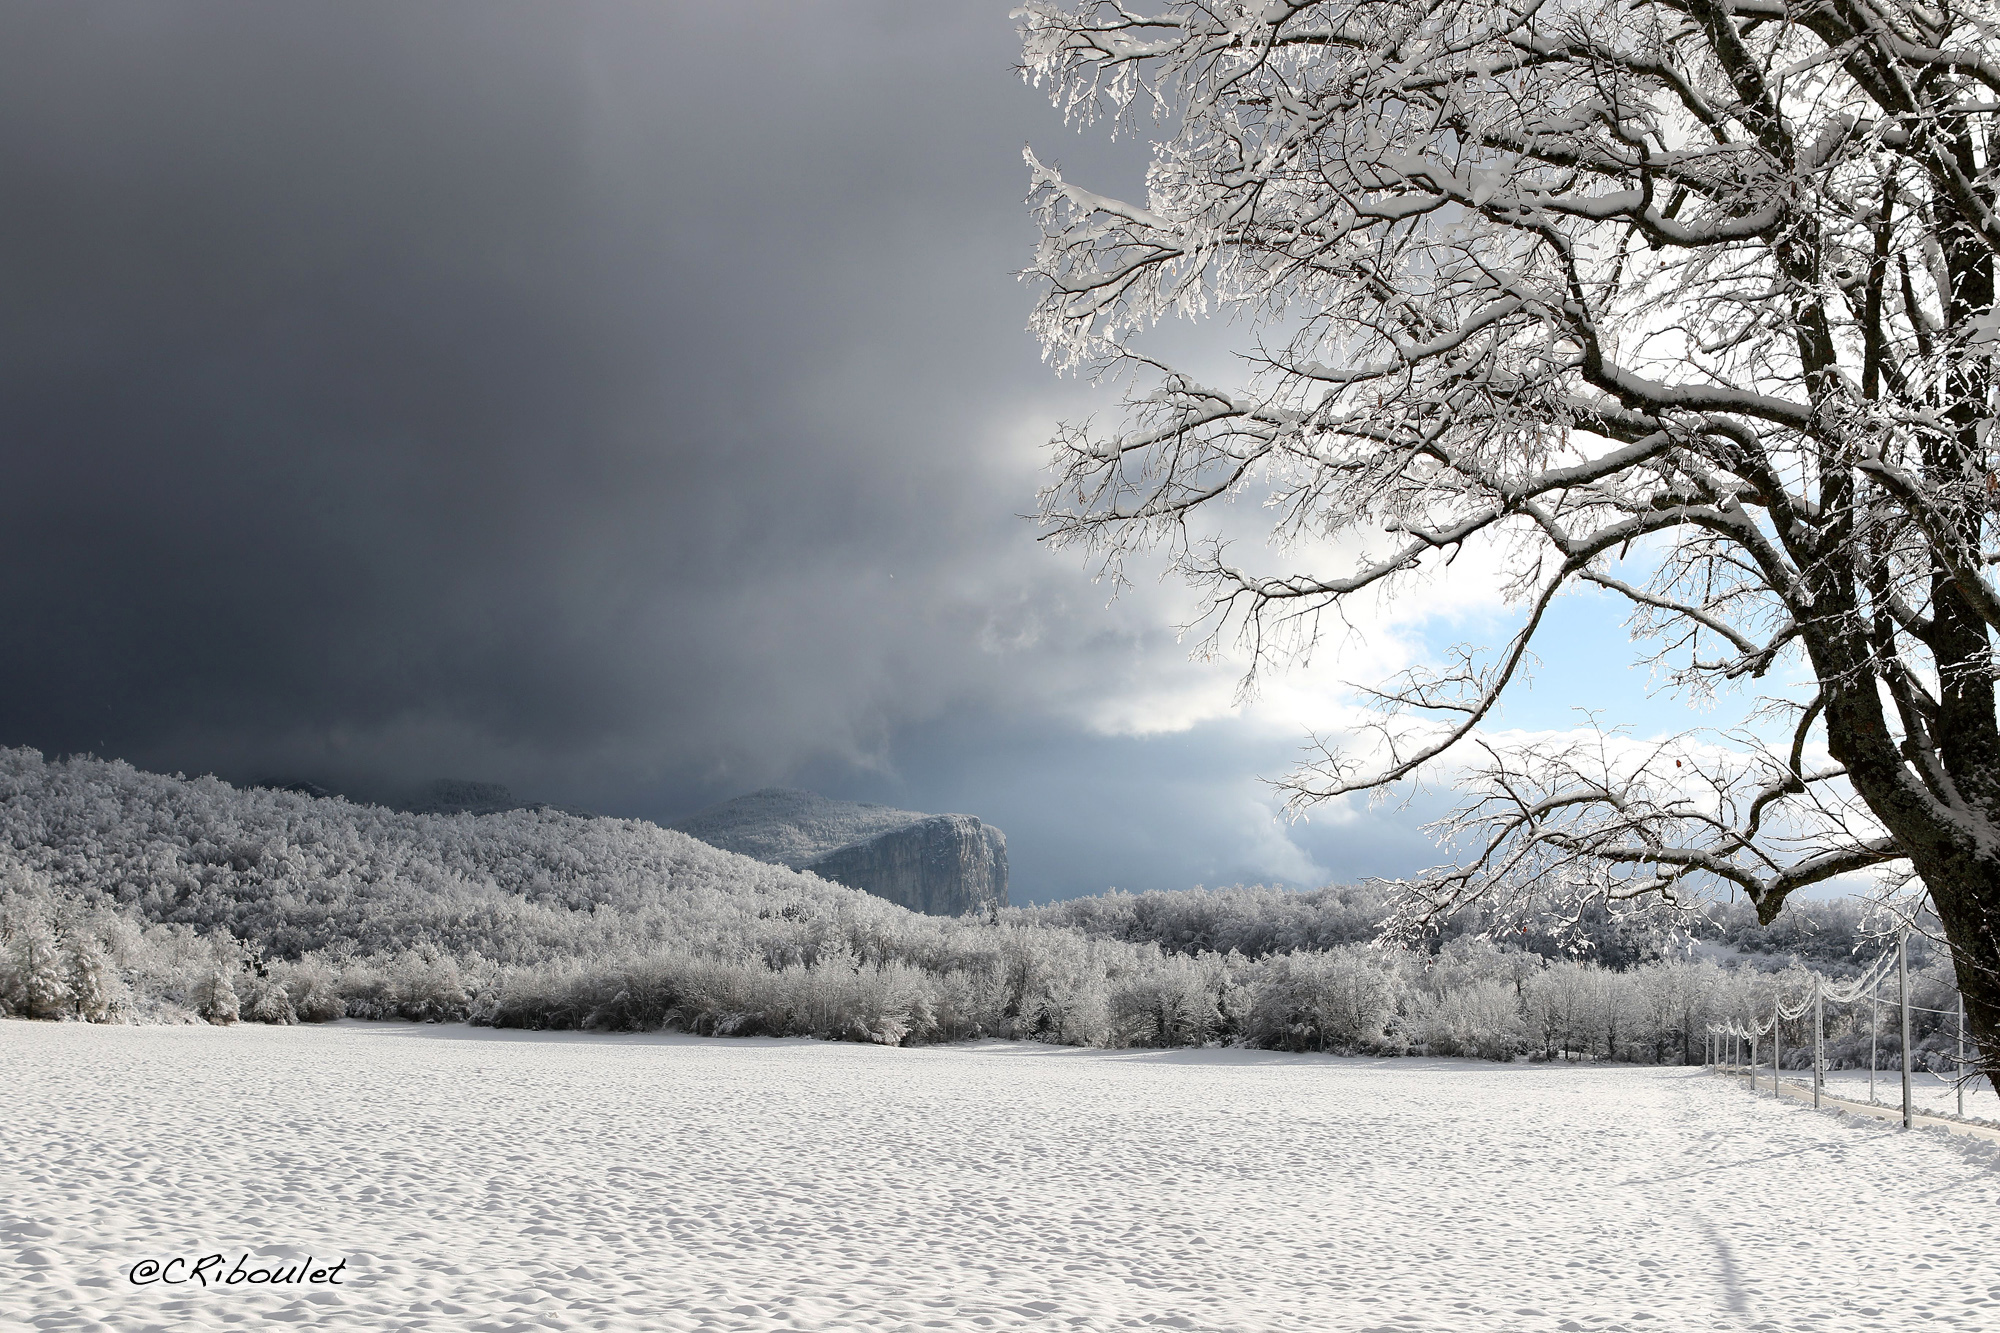 Скачать обои бесплатно Зима, Снег, Дерево, Поле, Ландшафт, Фотографии картинка на рабочий стол ПК